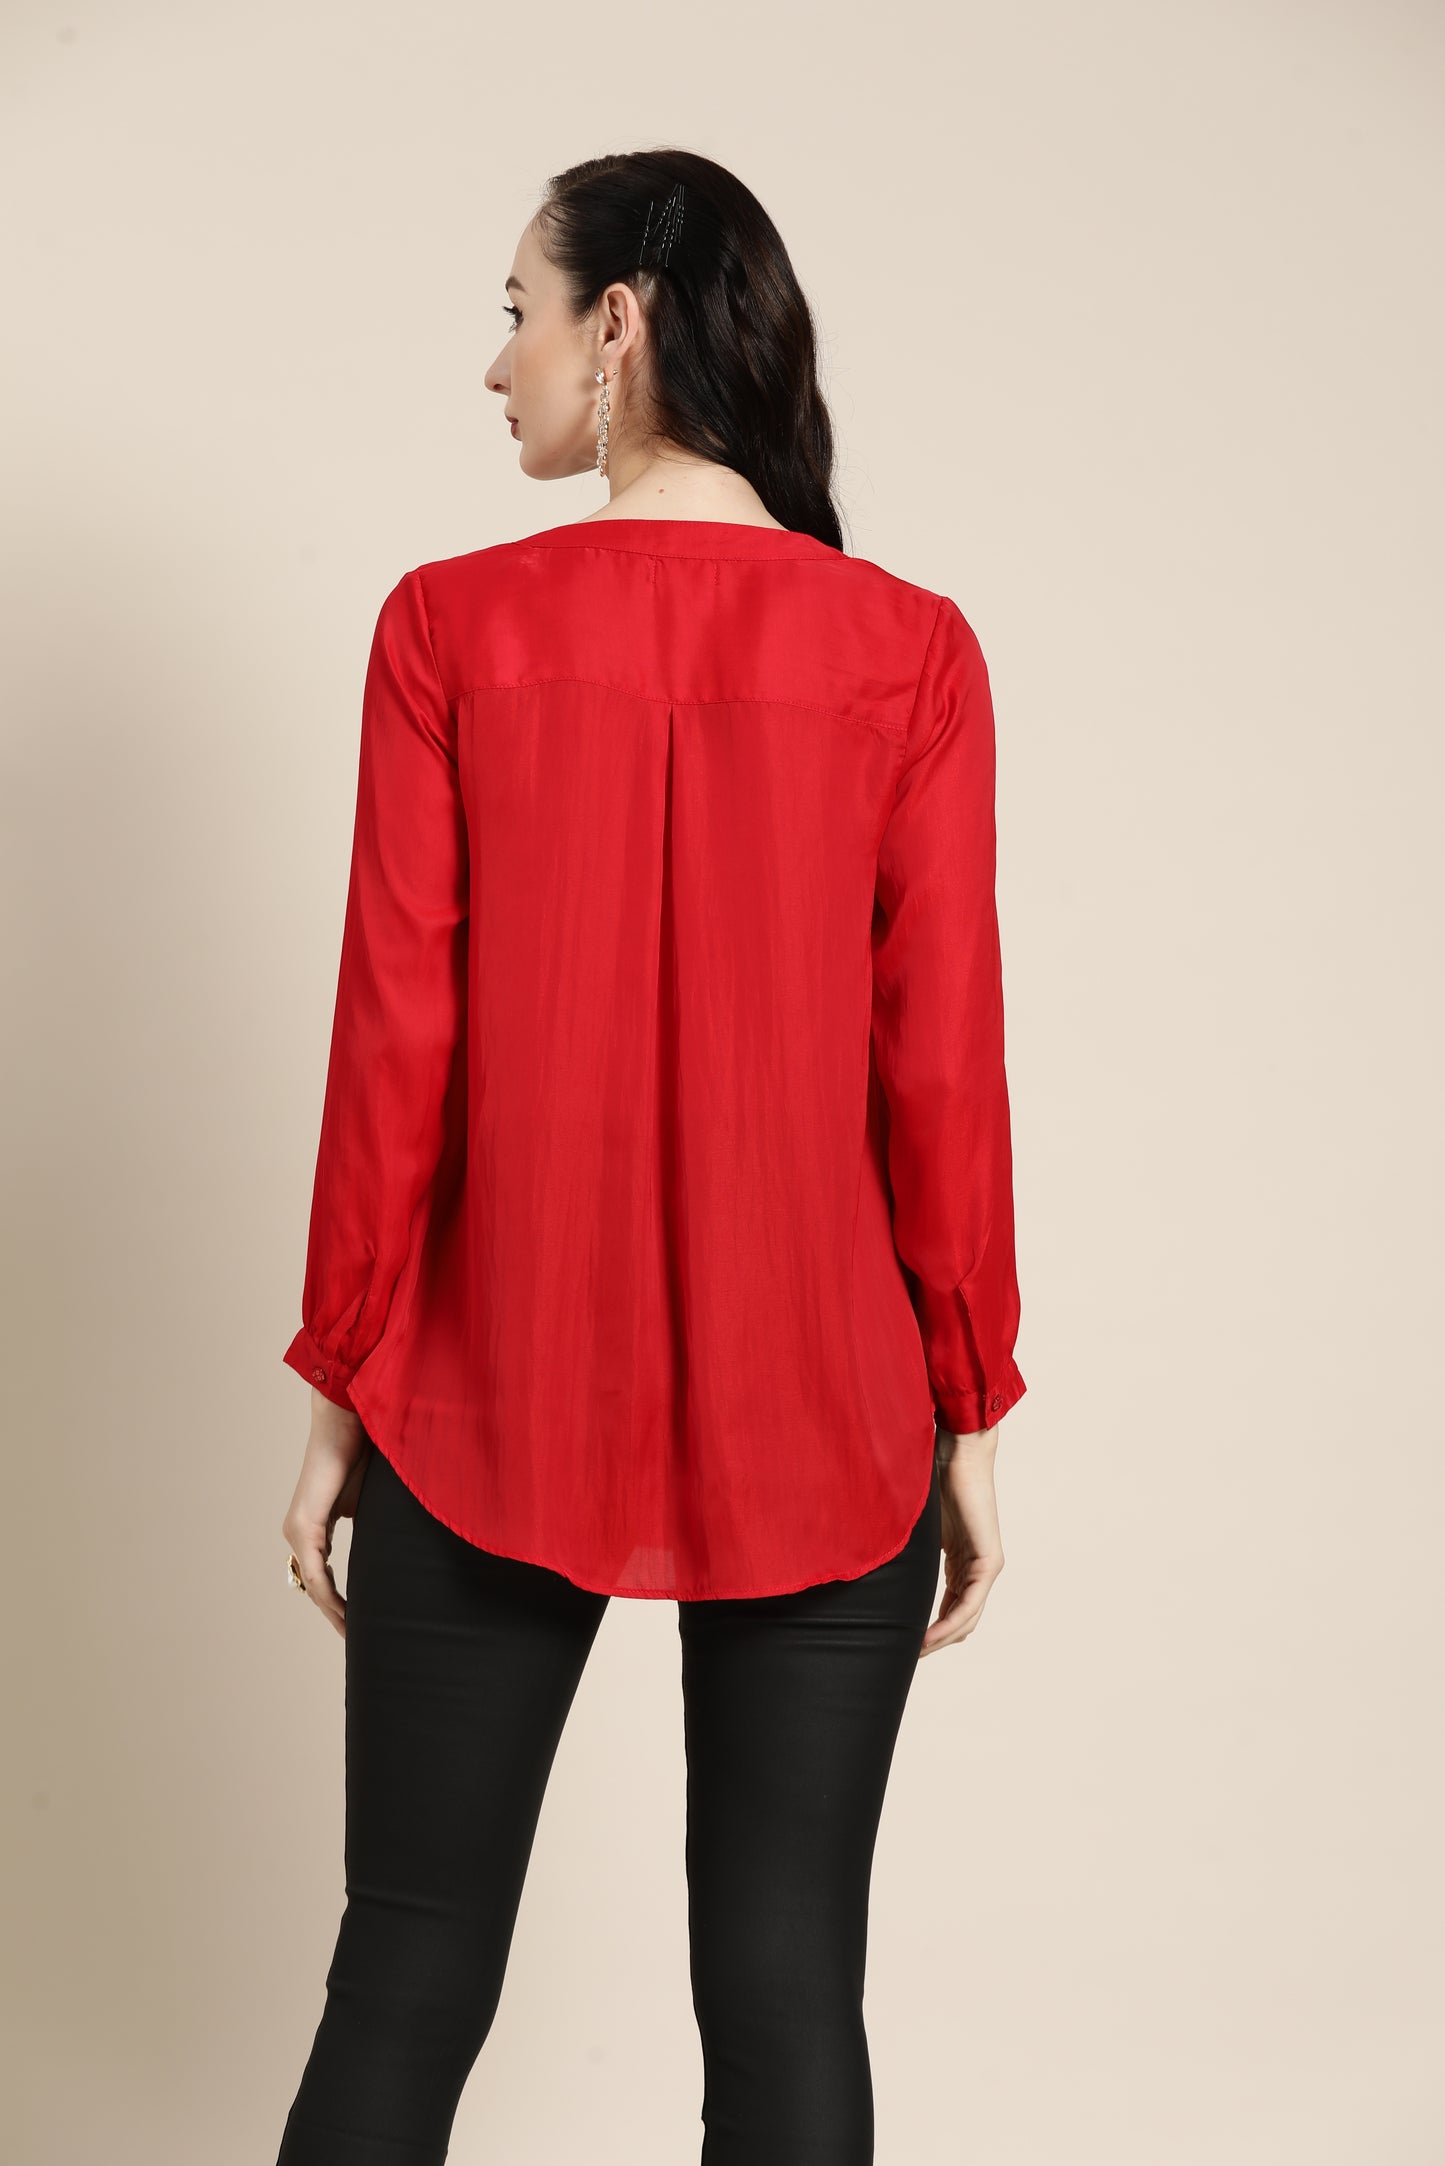 Solid Dark Red Regular Fit Mandarin Collar Full Cuff Sleeve Silk Top